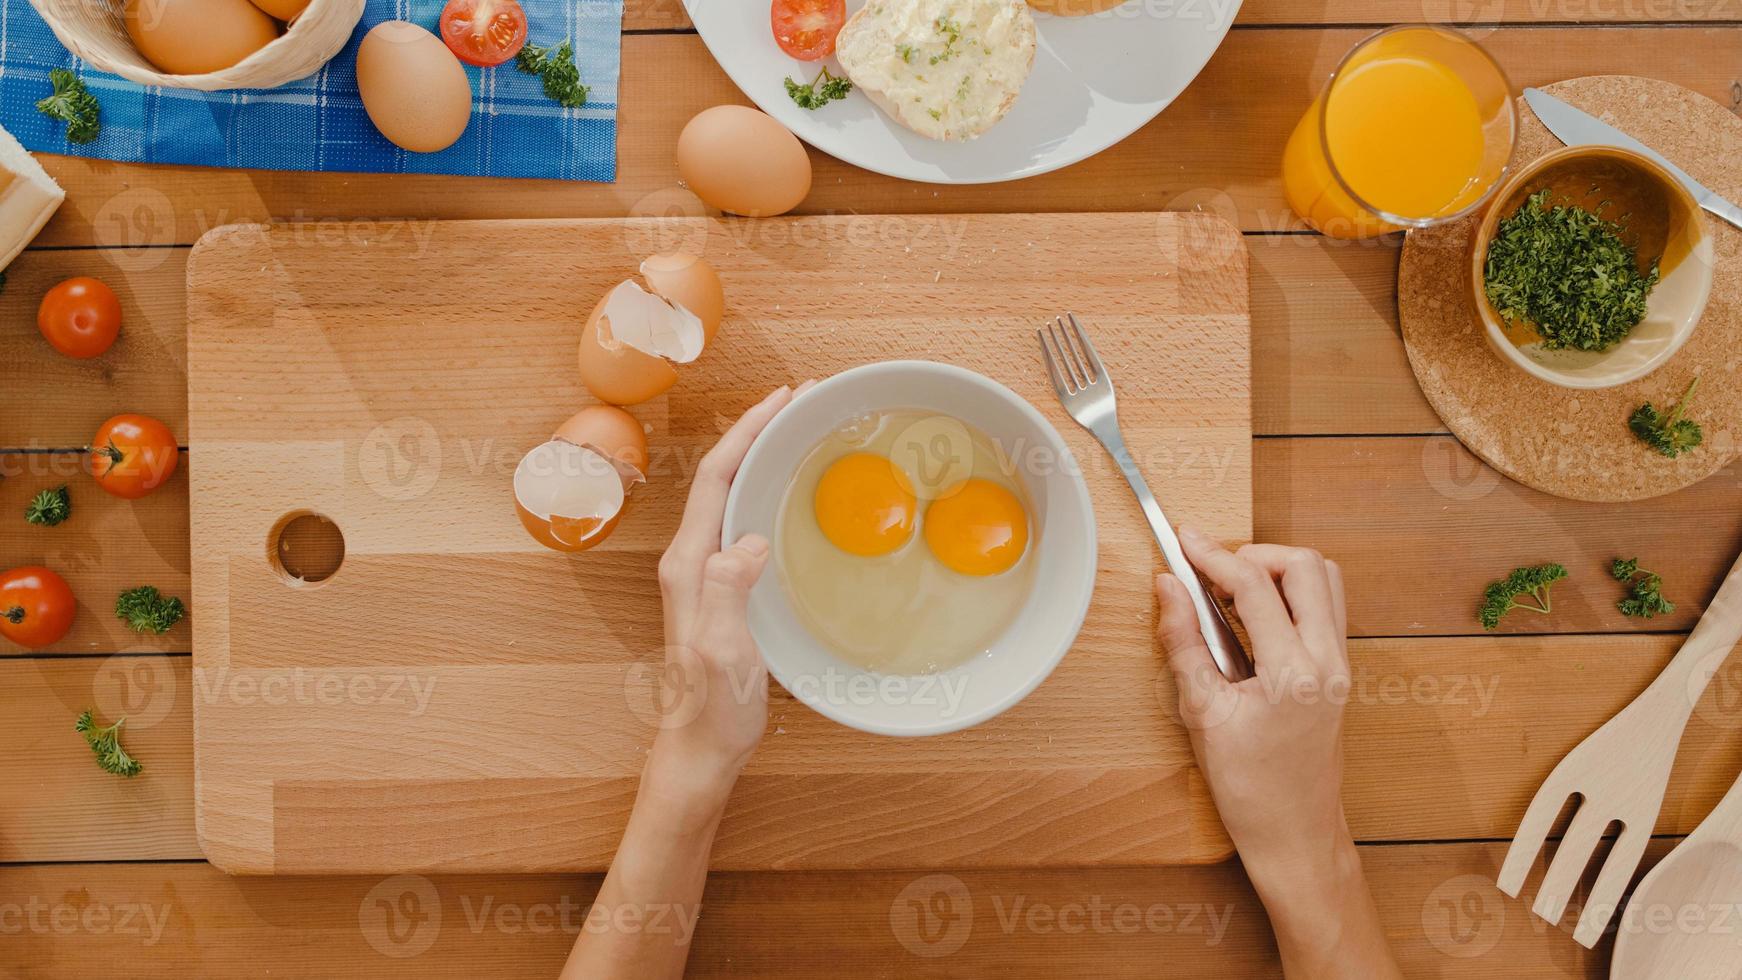 handen van jonge aziatische vrouw chef-kok die ei in keramische kom zwaait, kook omelet met groenten op een houten bord op de keukentafel in huis. levensstijl gezond eten en traditionele bakkerij. bovenaanzicht schot. foto